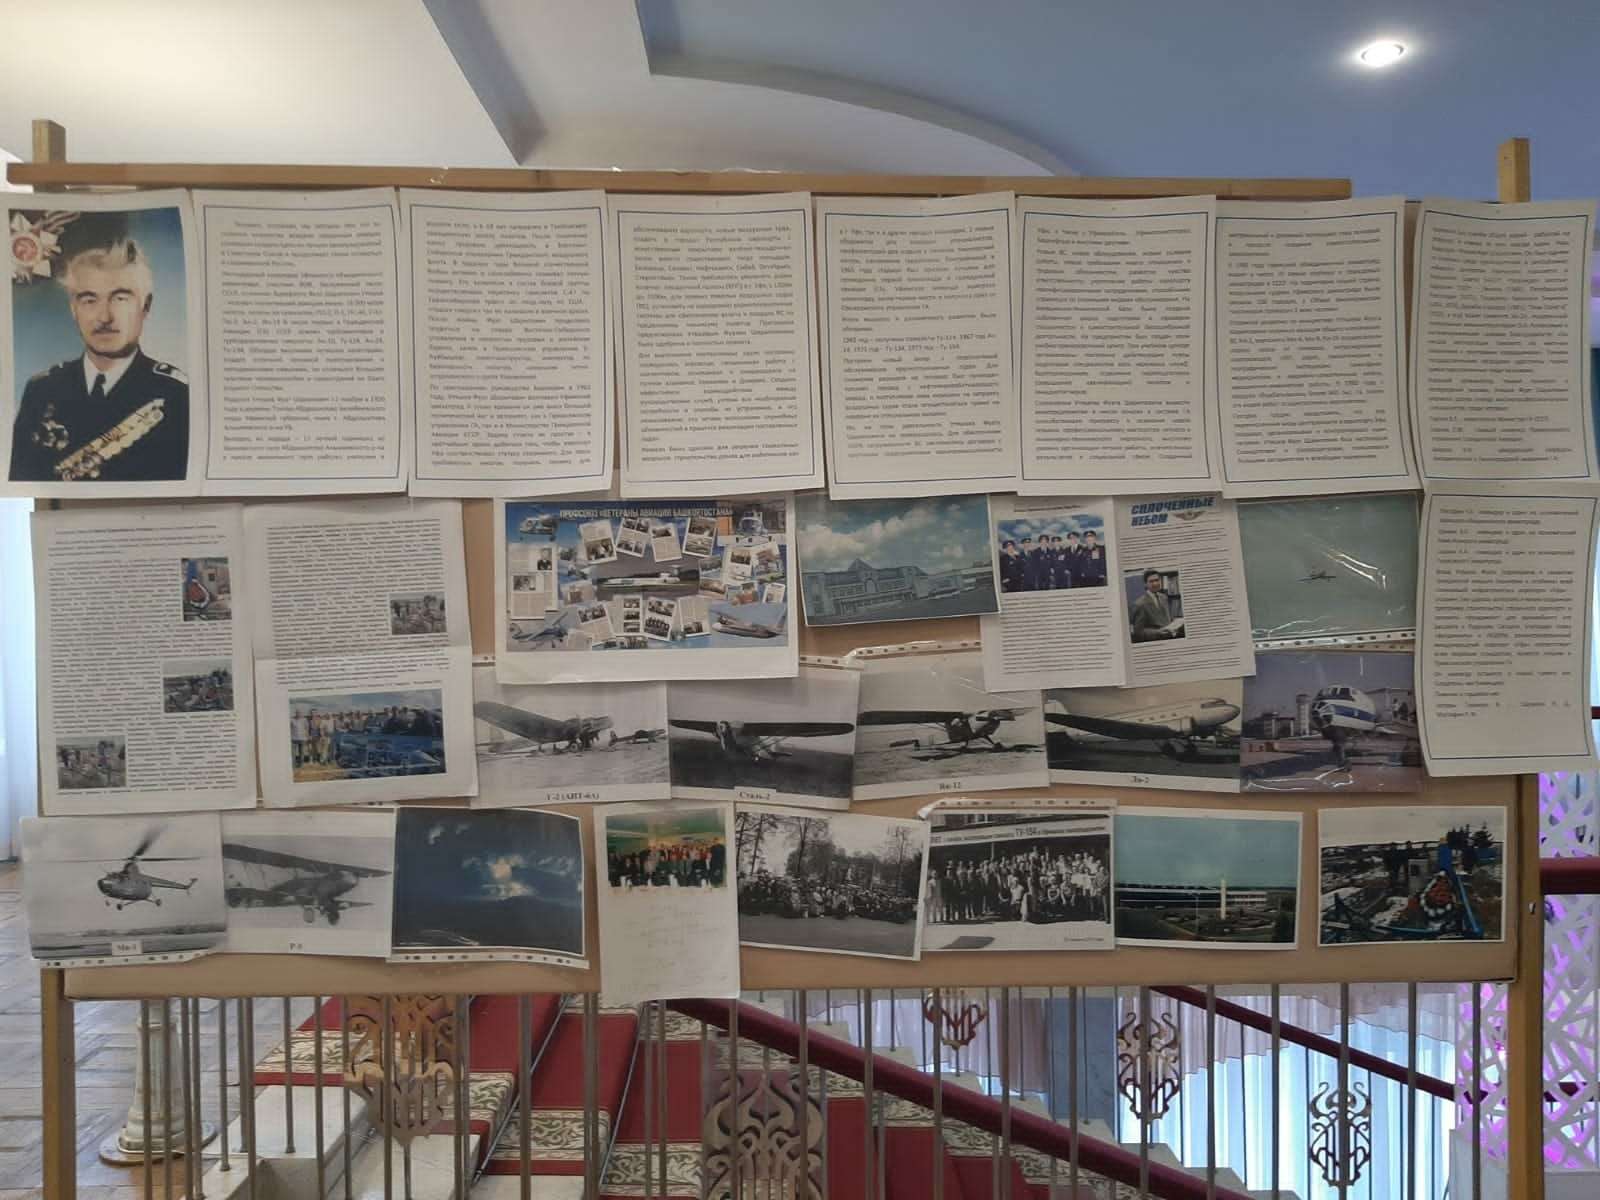 9 февраля во Дворце культуры "Моторостроитель" Прошло мероприятие, посвящённое 100-летию гражданской авиации